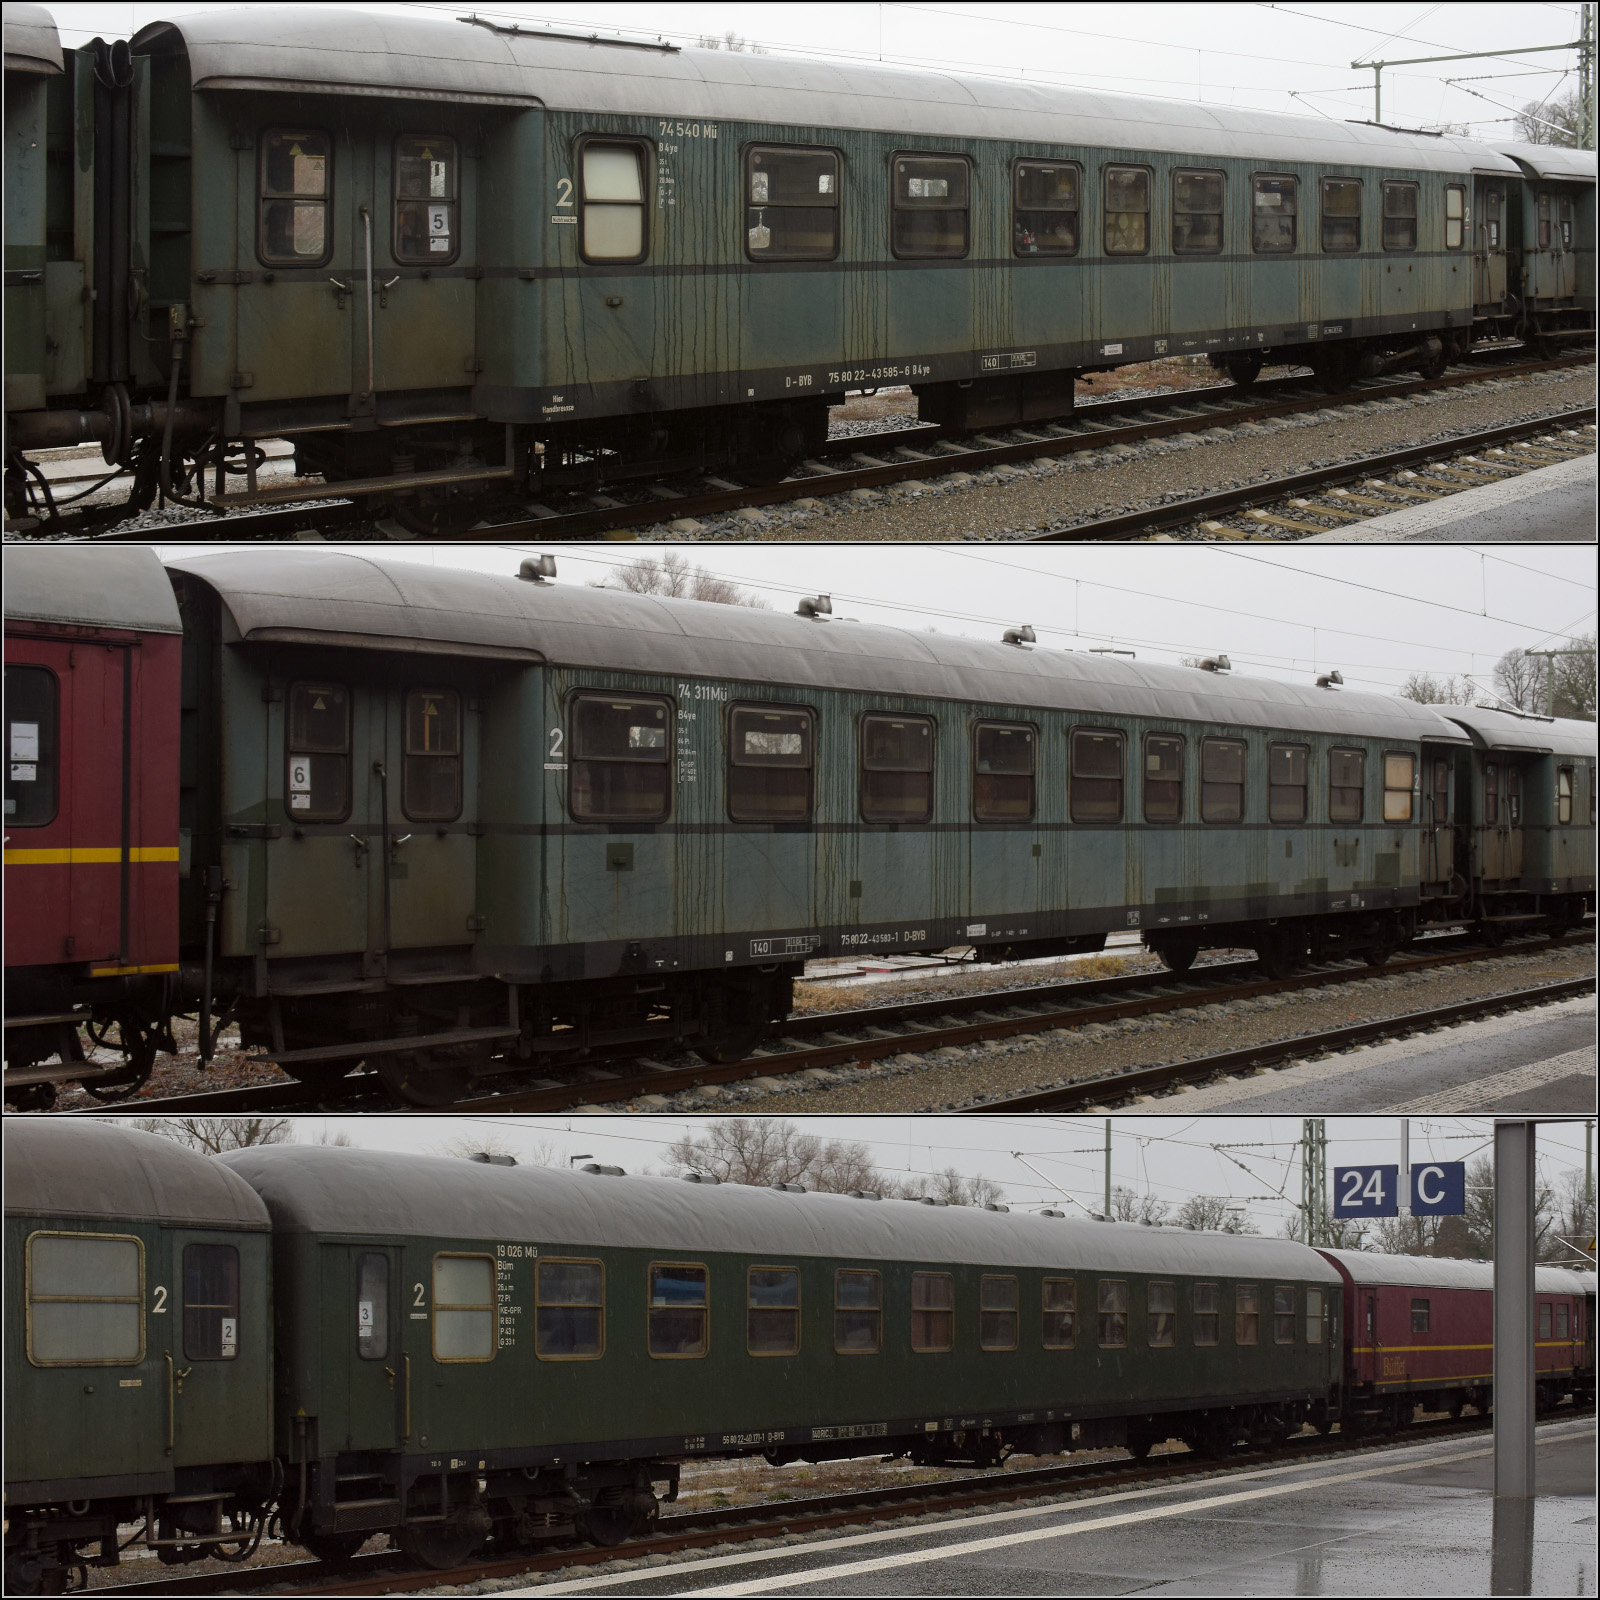 Der historische Zug des BEM in Lindau-Reutin, Februar 2023:

geschweiter Eilzugwagen 75 80 22-43 585-6 D-BYB 74 540 M B4ye
geschweiter Eilzugwagen 75 80 22-43 583-1 D-BYB 74 311 M B4ye
26,4m-Schnellzugwagen der DB 56 80 22-40 171-1 D-BYB 19 026 M Bm